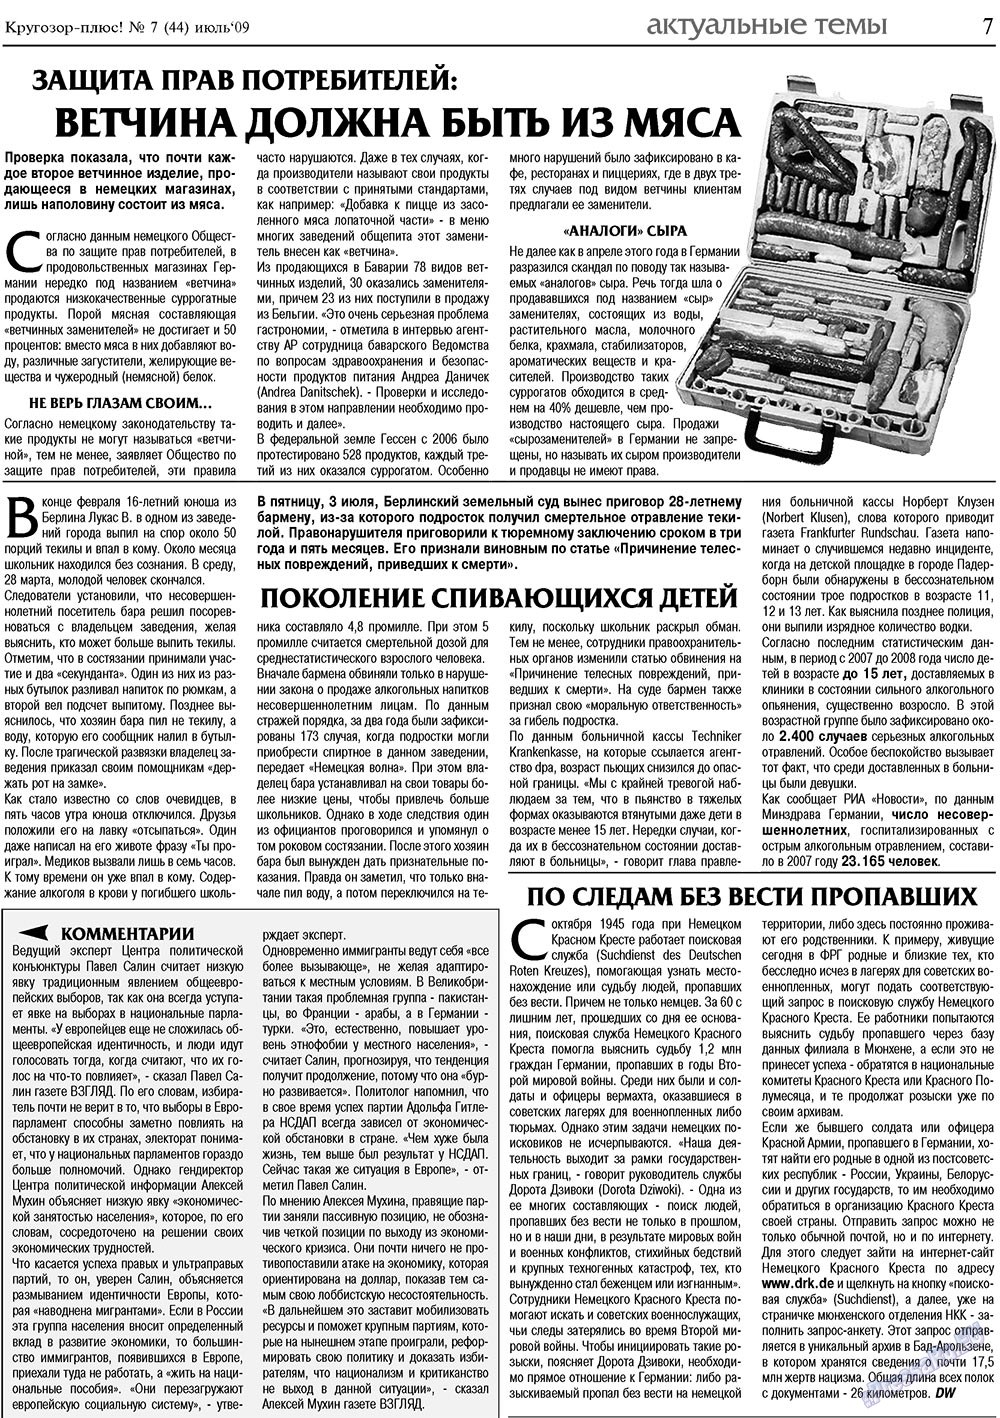 Кругозор плюс!, газета. 2009 №7 стр.7